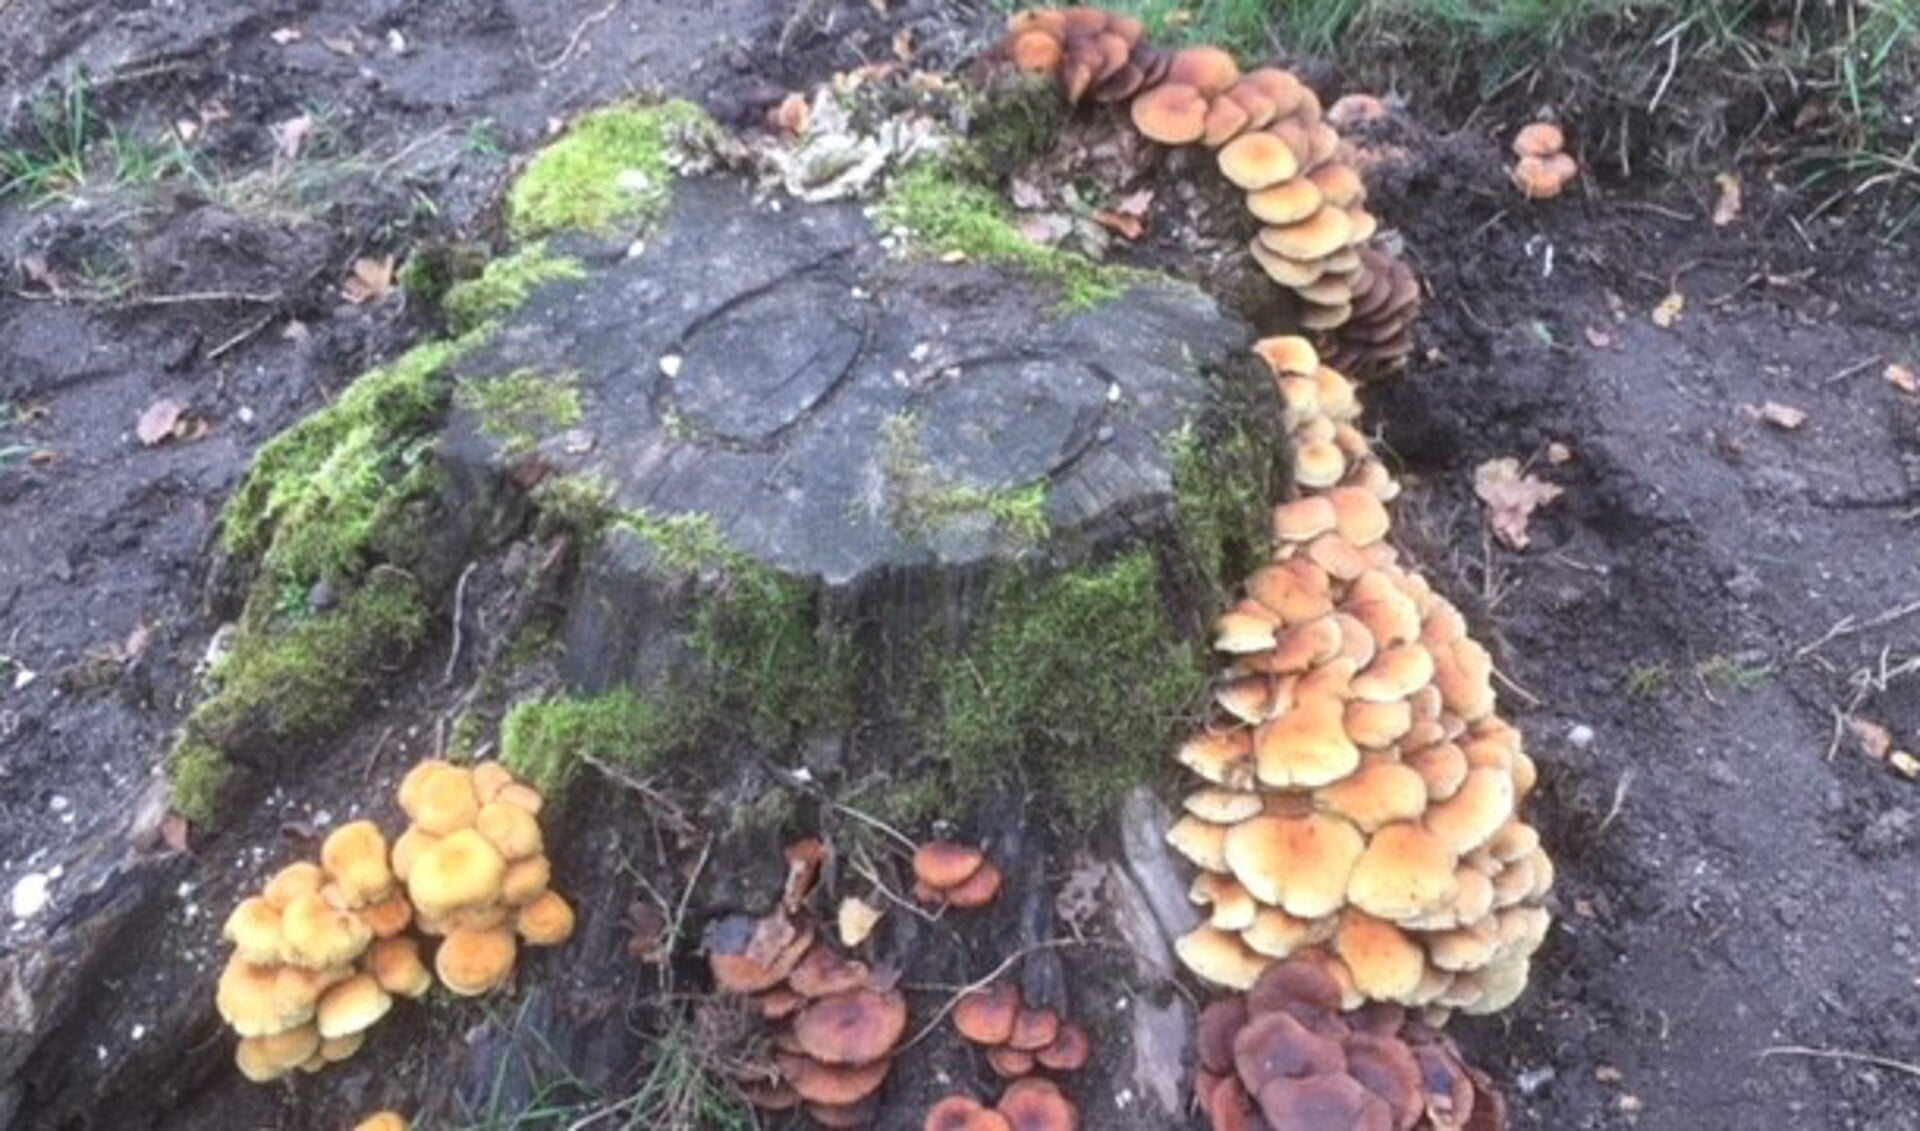 De paddenstoel staat synoniem voor de herfst